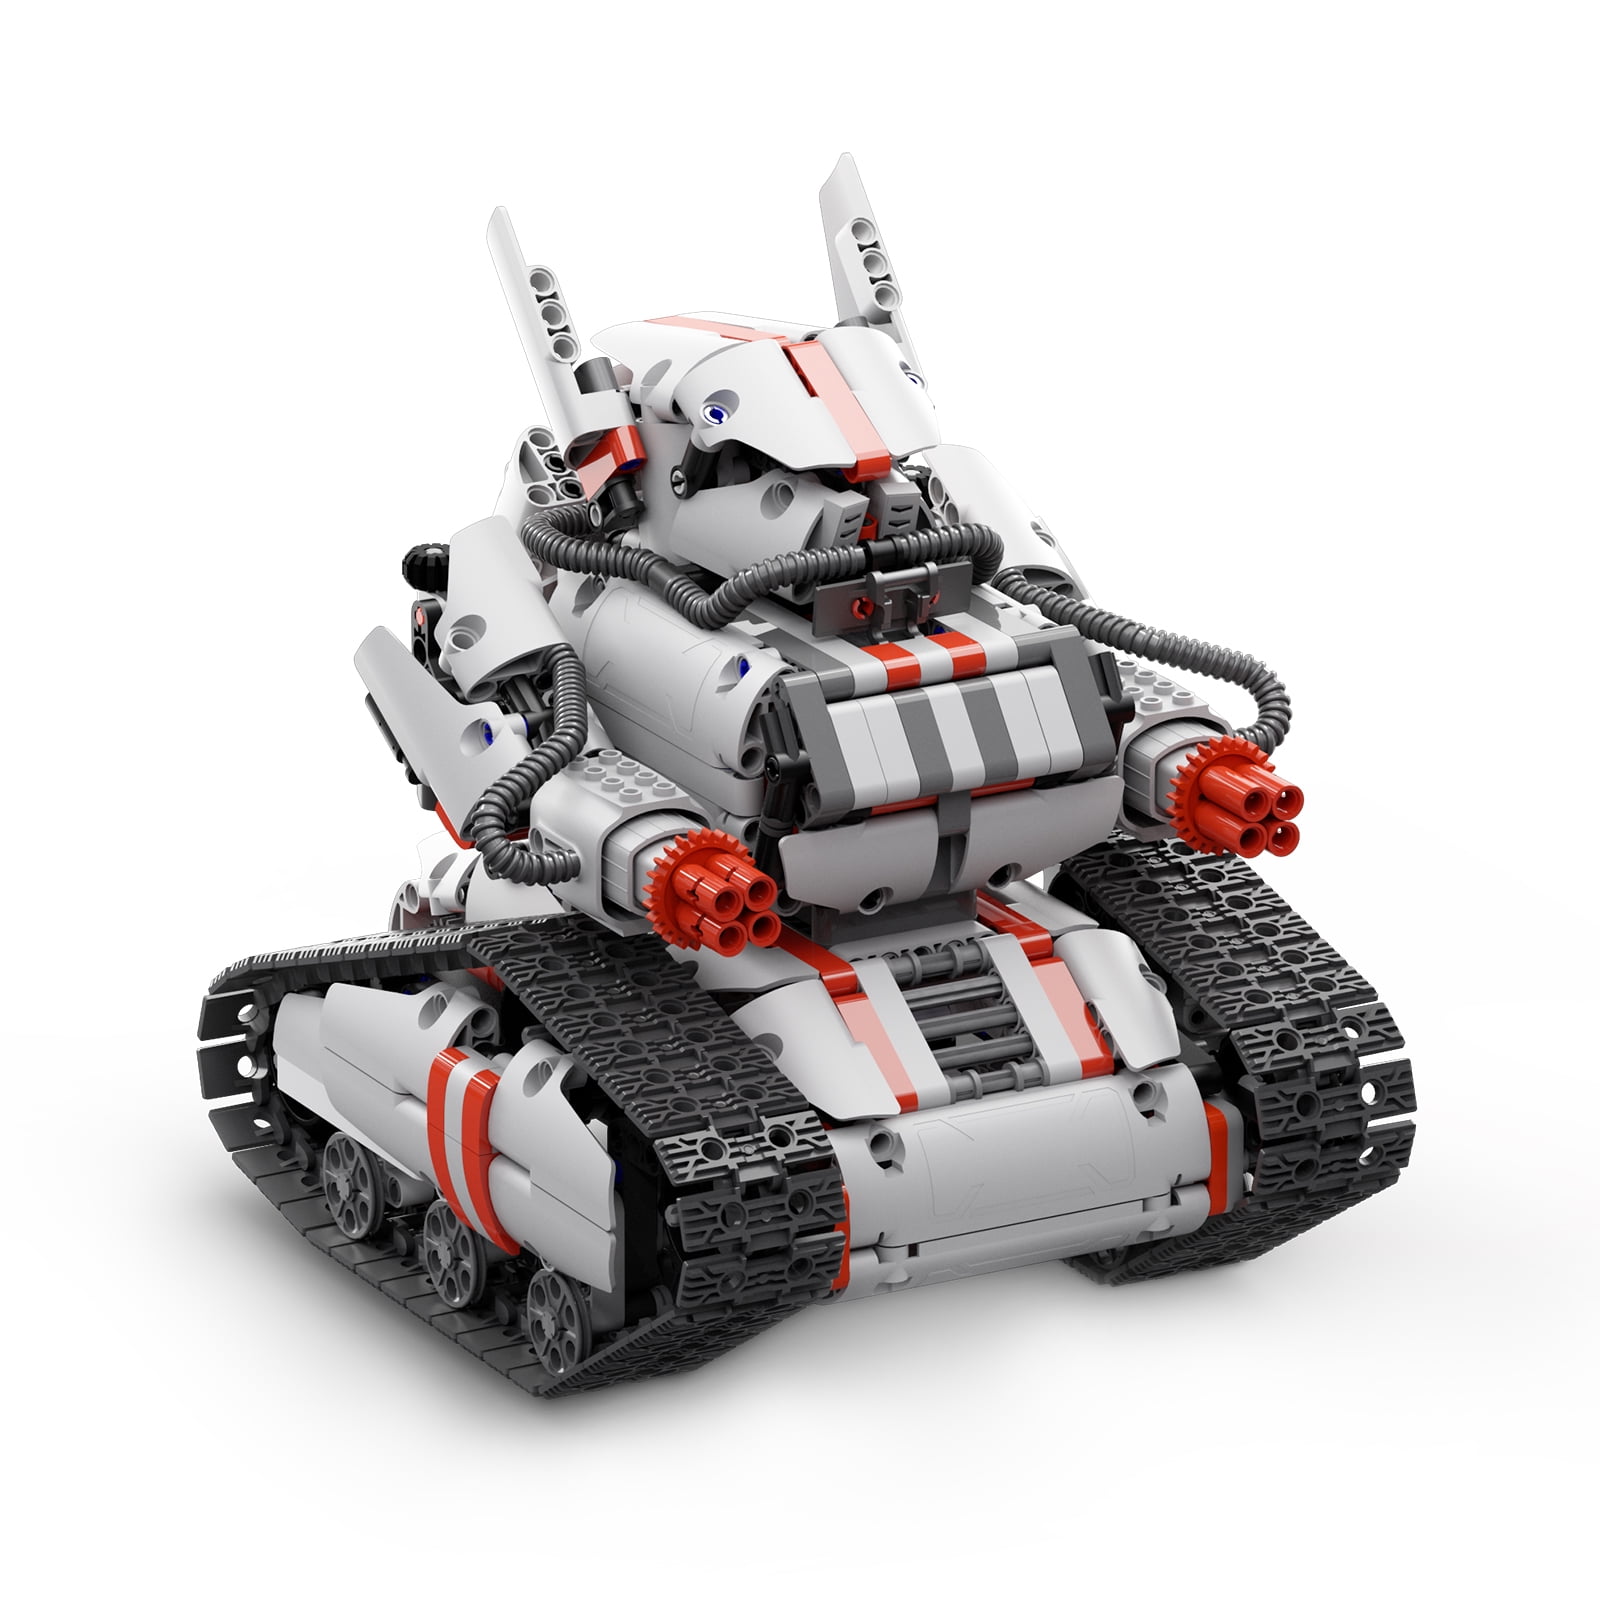 Xiaomi Mi Robot Builder Rover, Create and Build Robot